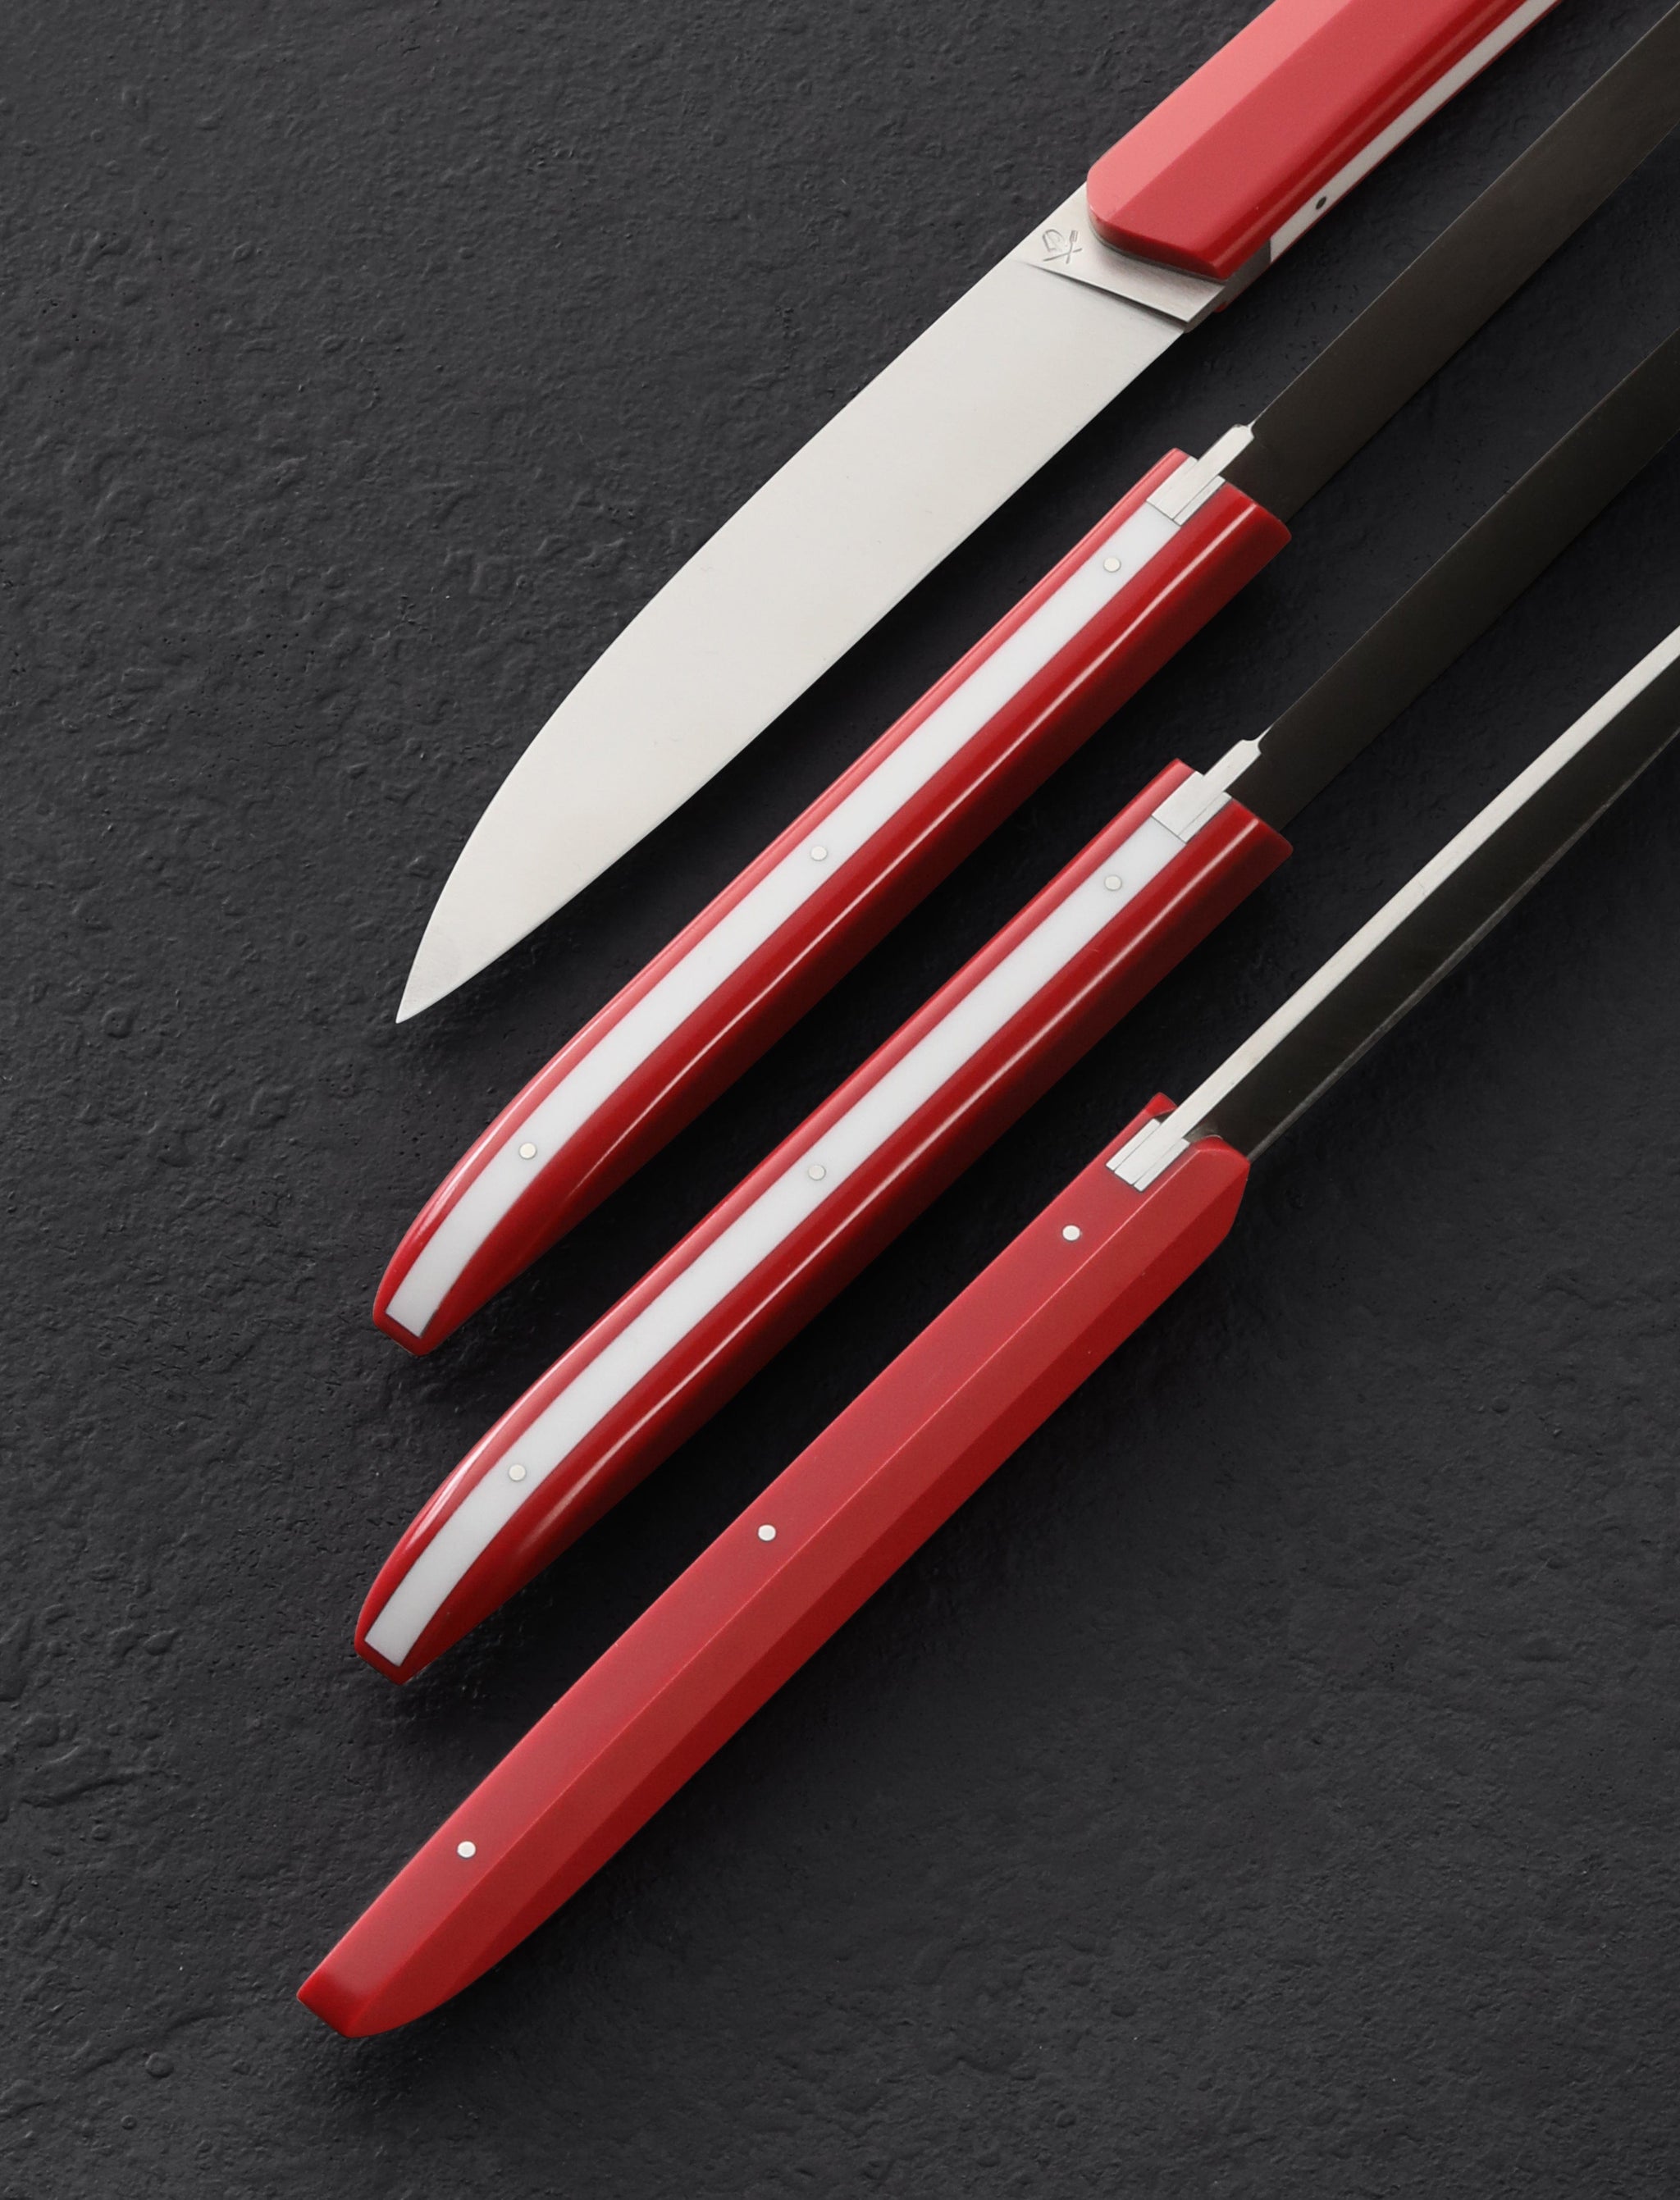 https://eatingtools.com/cdn/shop/files/table-knives-roland-lannier-france-royal-red-steak-knife-set-43020420448531.jpg?v=1693339223&width=2048